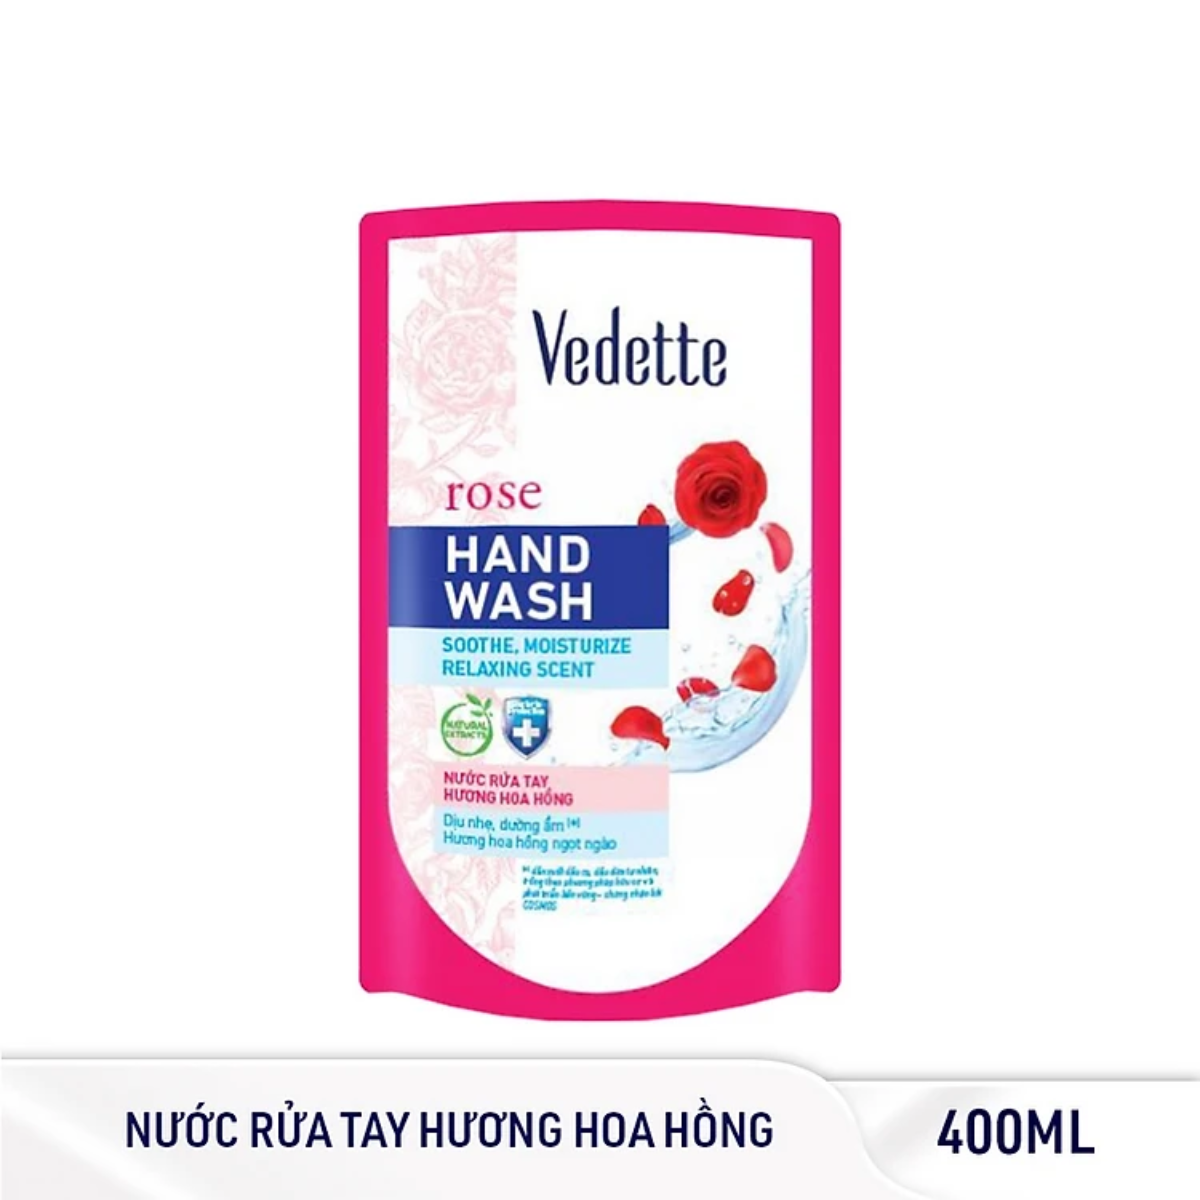 Nước rửa tay Vedette hoa hồng 400ml